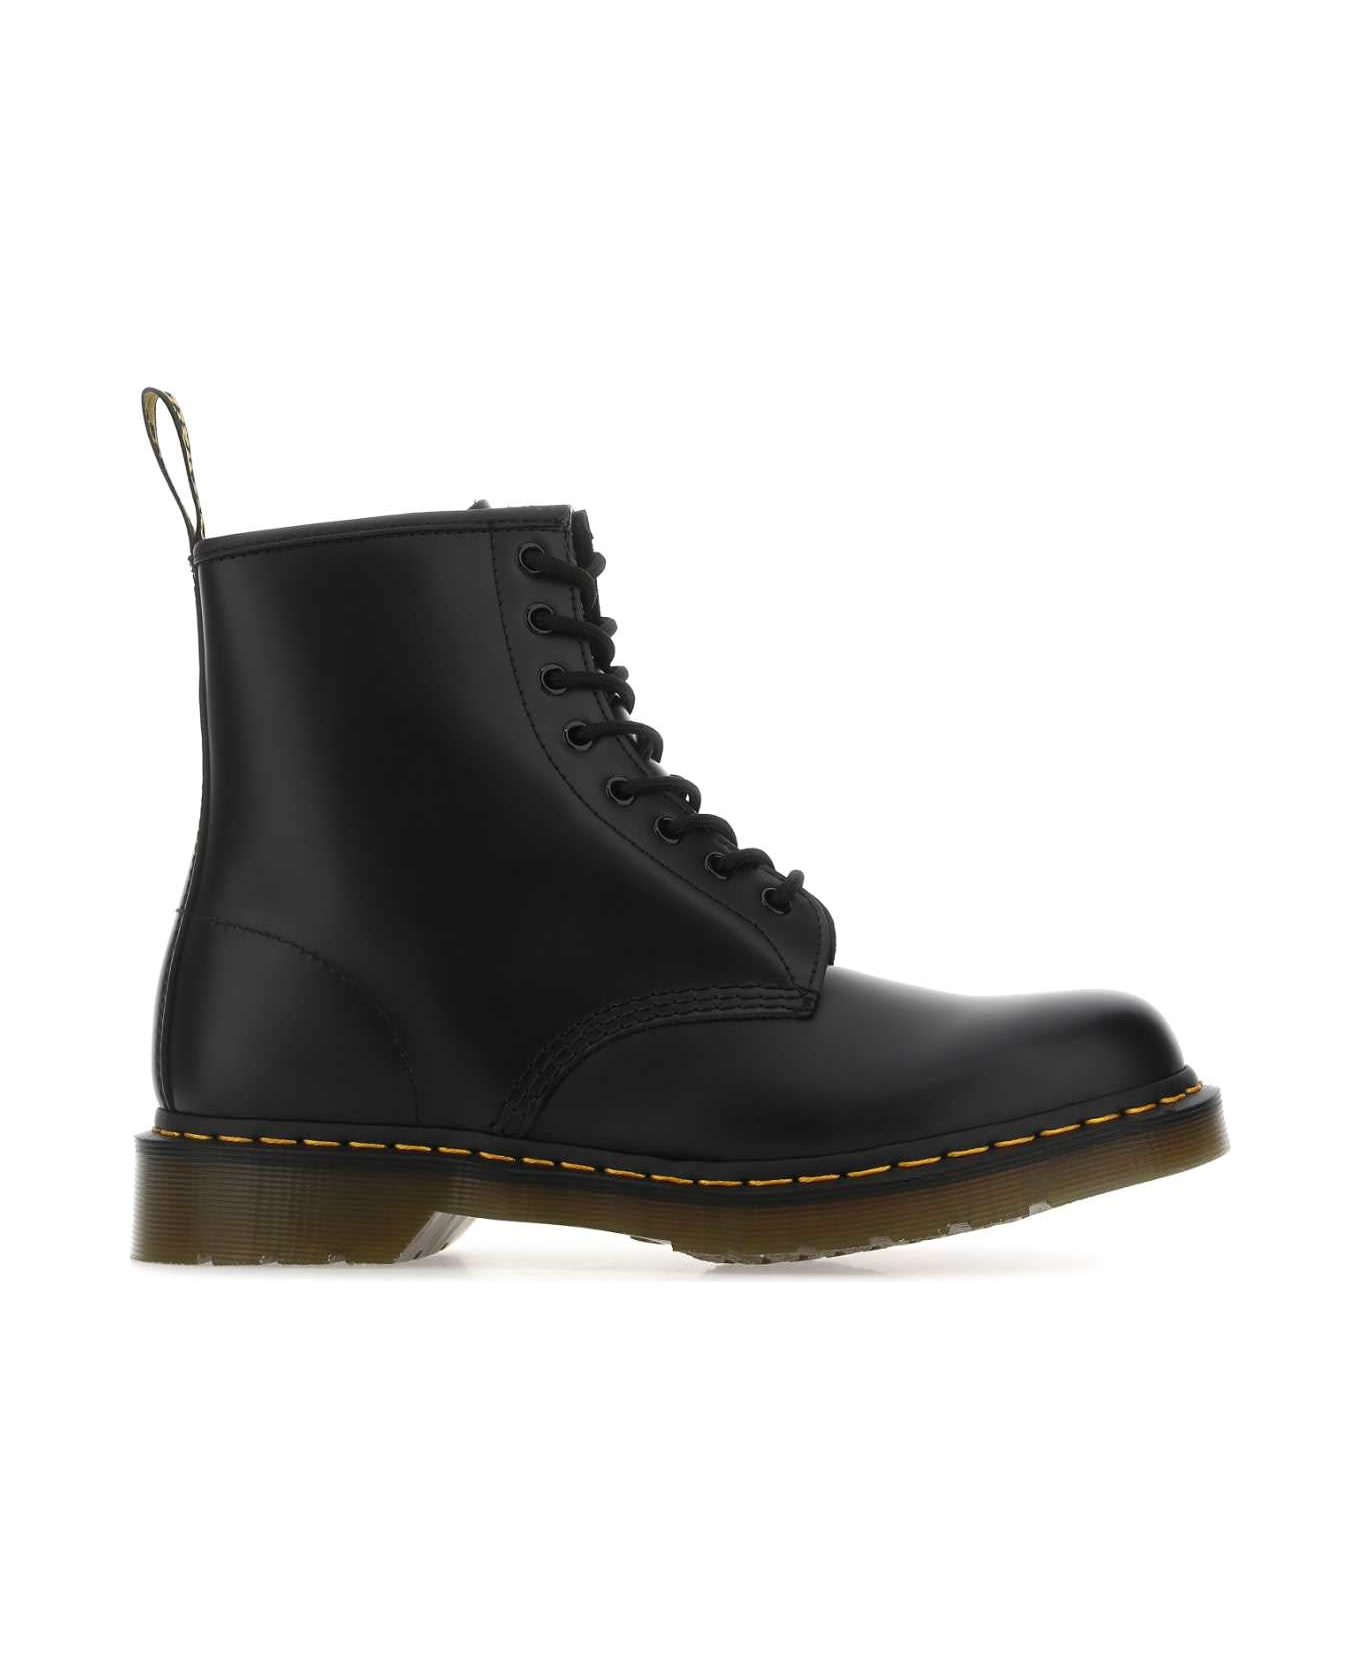 Dr. Martens Black Leather 1460 Ankle Boots - BlackSmooth